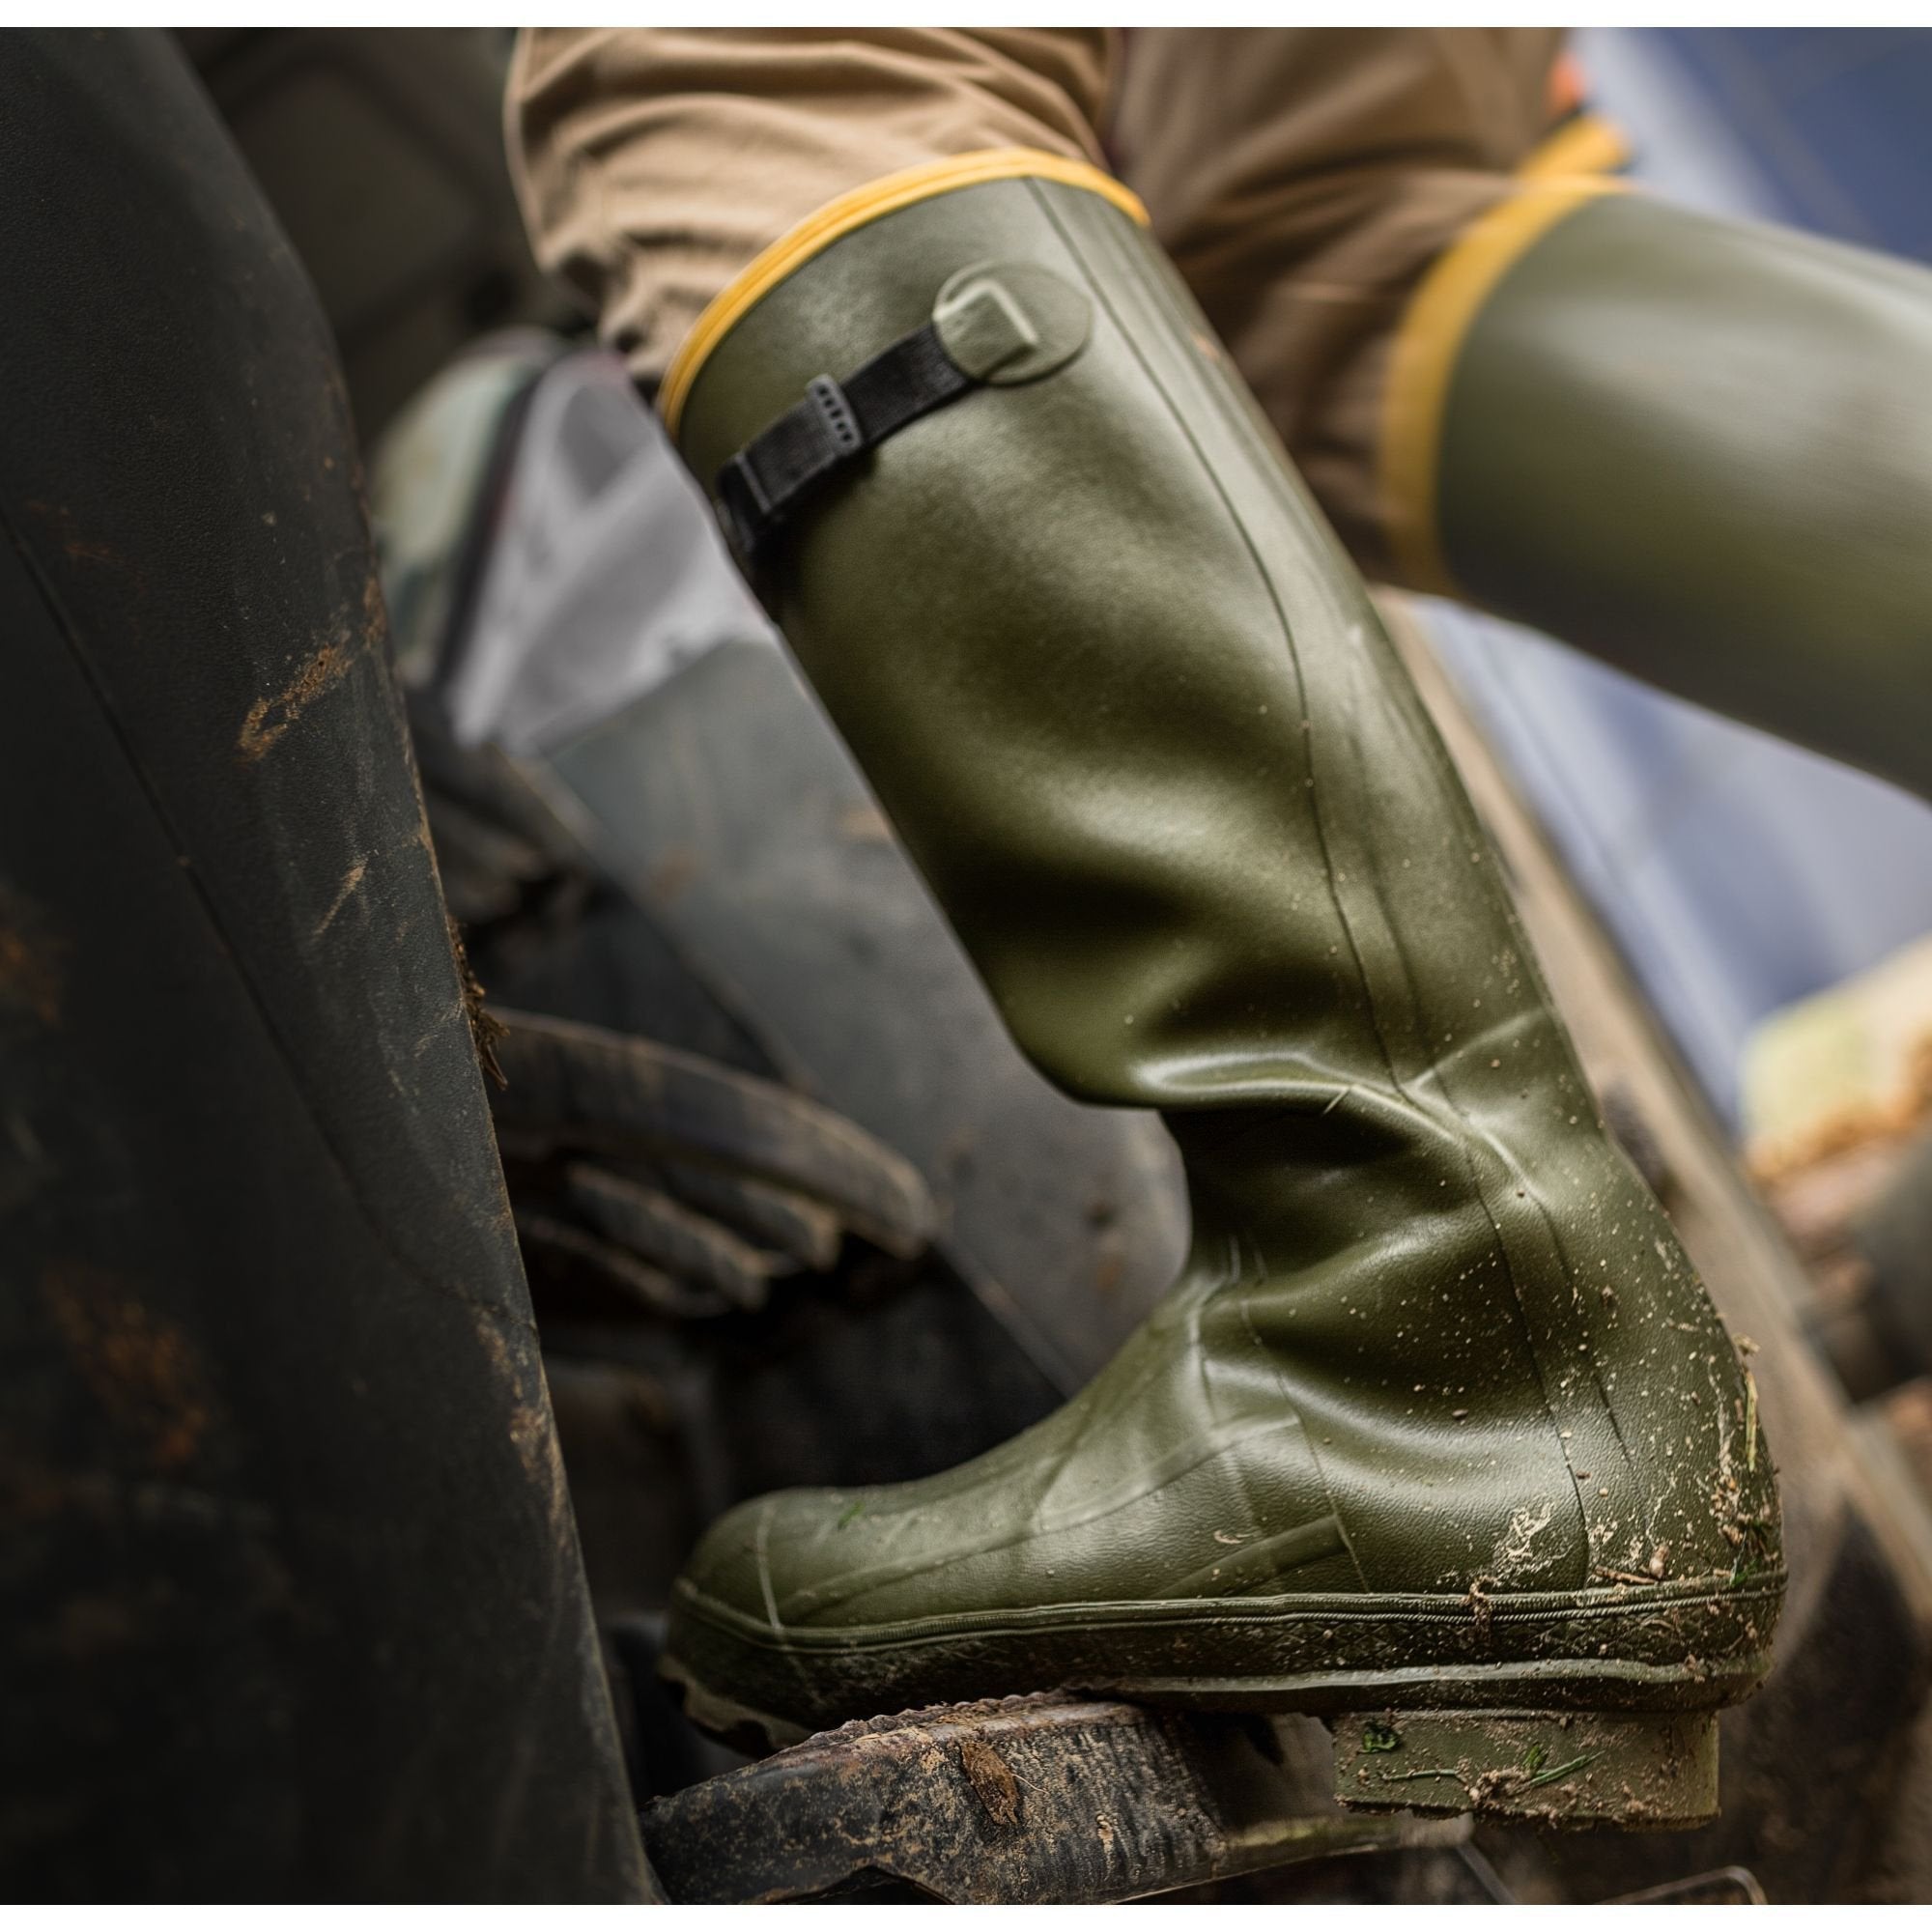 LaCrosse Men's Grange 18" Rubber Hunt Boot - Green - 150040  - Overlook Boots